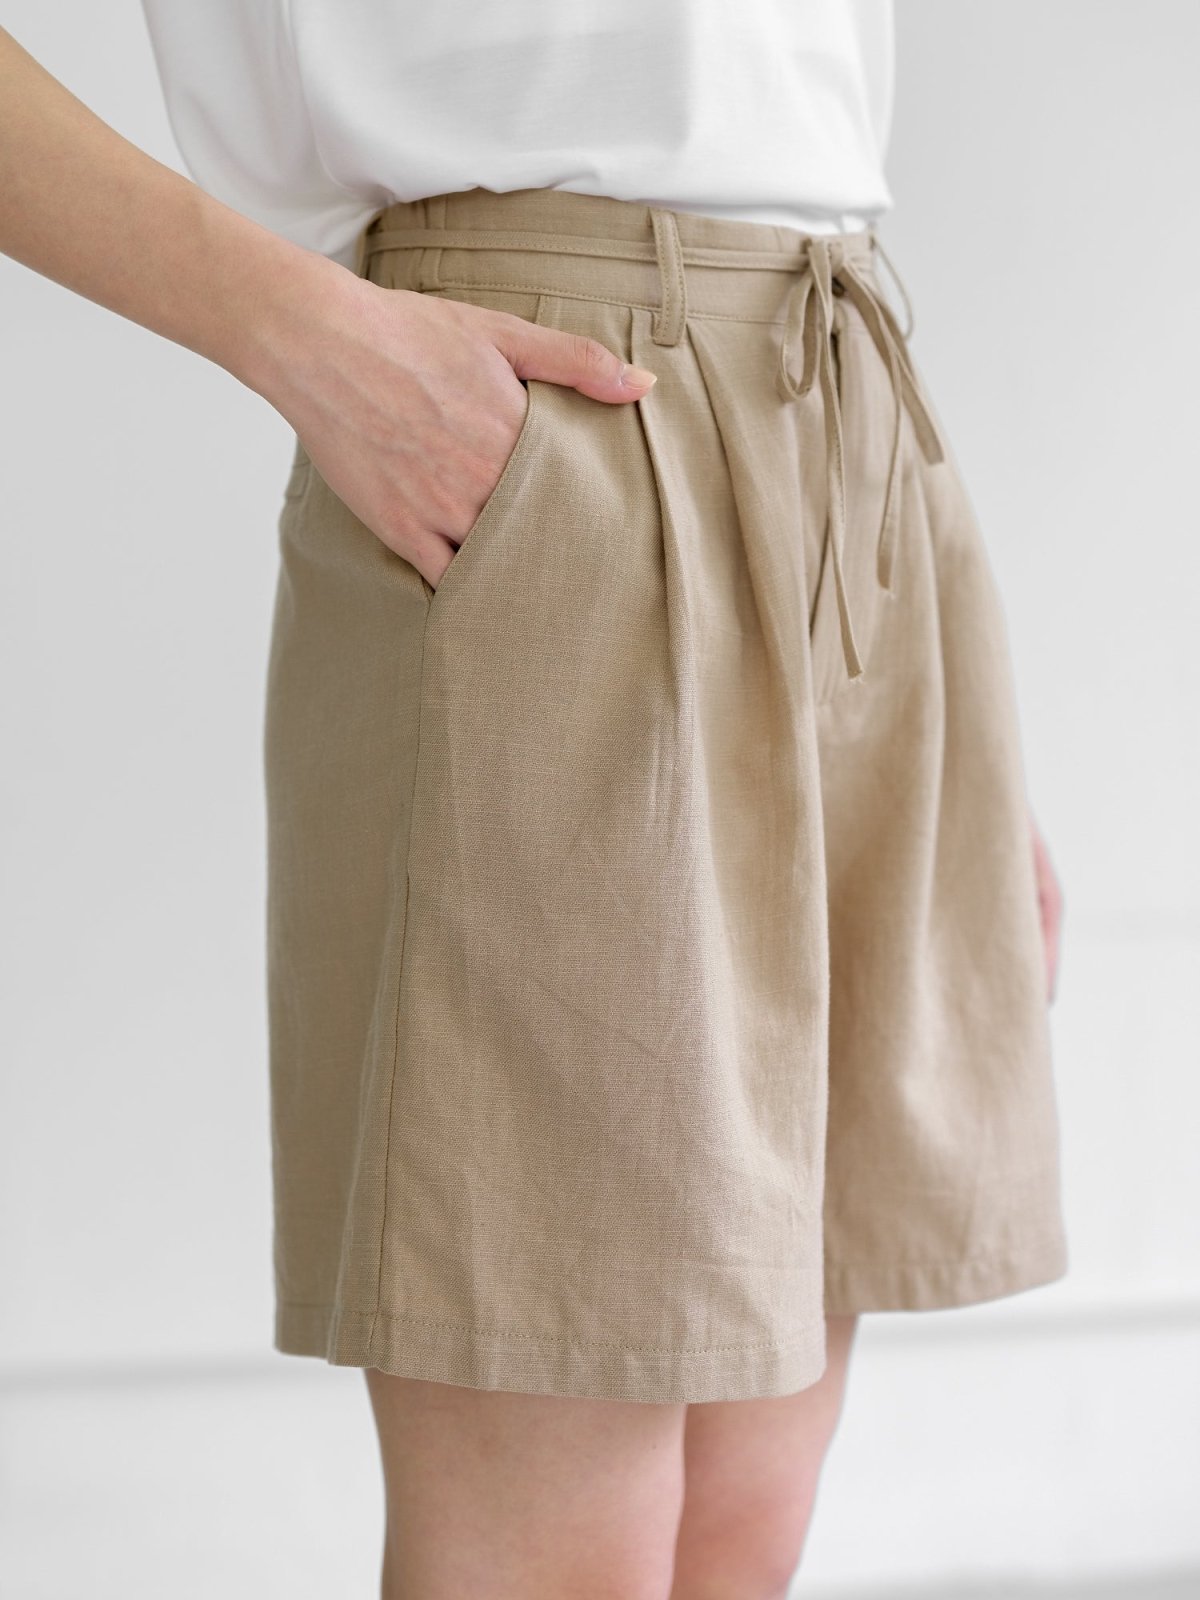 Leah Tie Waist Linen Cotton Shorts - DAG-G-220194KhakiBeigeS - Khaki Beige - S - D'ZAGE Designs